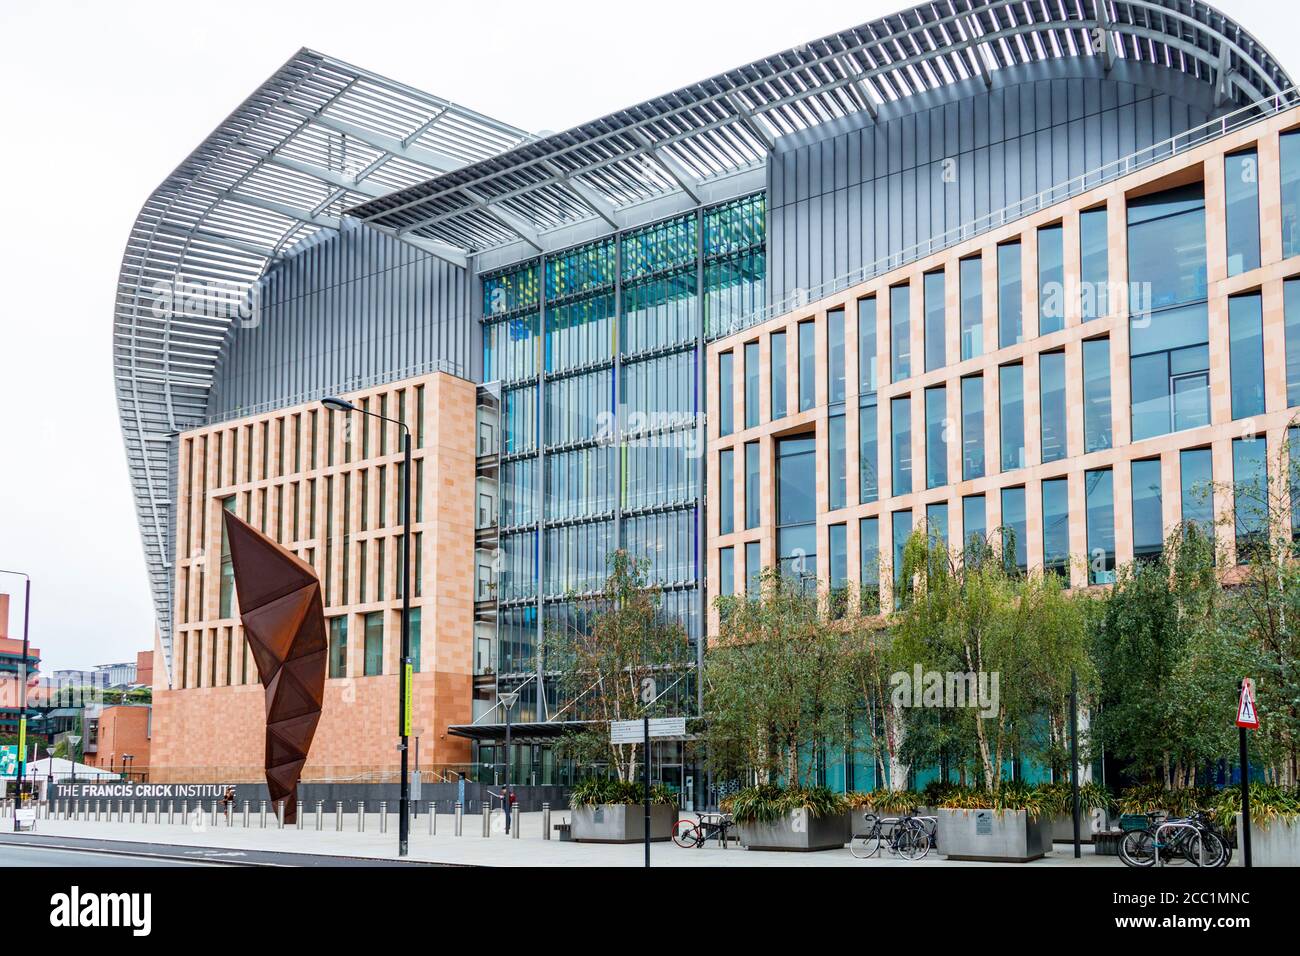 Das Francis Crick Institute, ein biomedizinisches Forschungszentrum in London, wurde 2010 gegründet und 2016 in Midland Road, London, Großbritannien, eröffnet Stockfoto